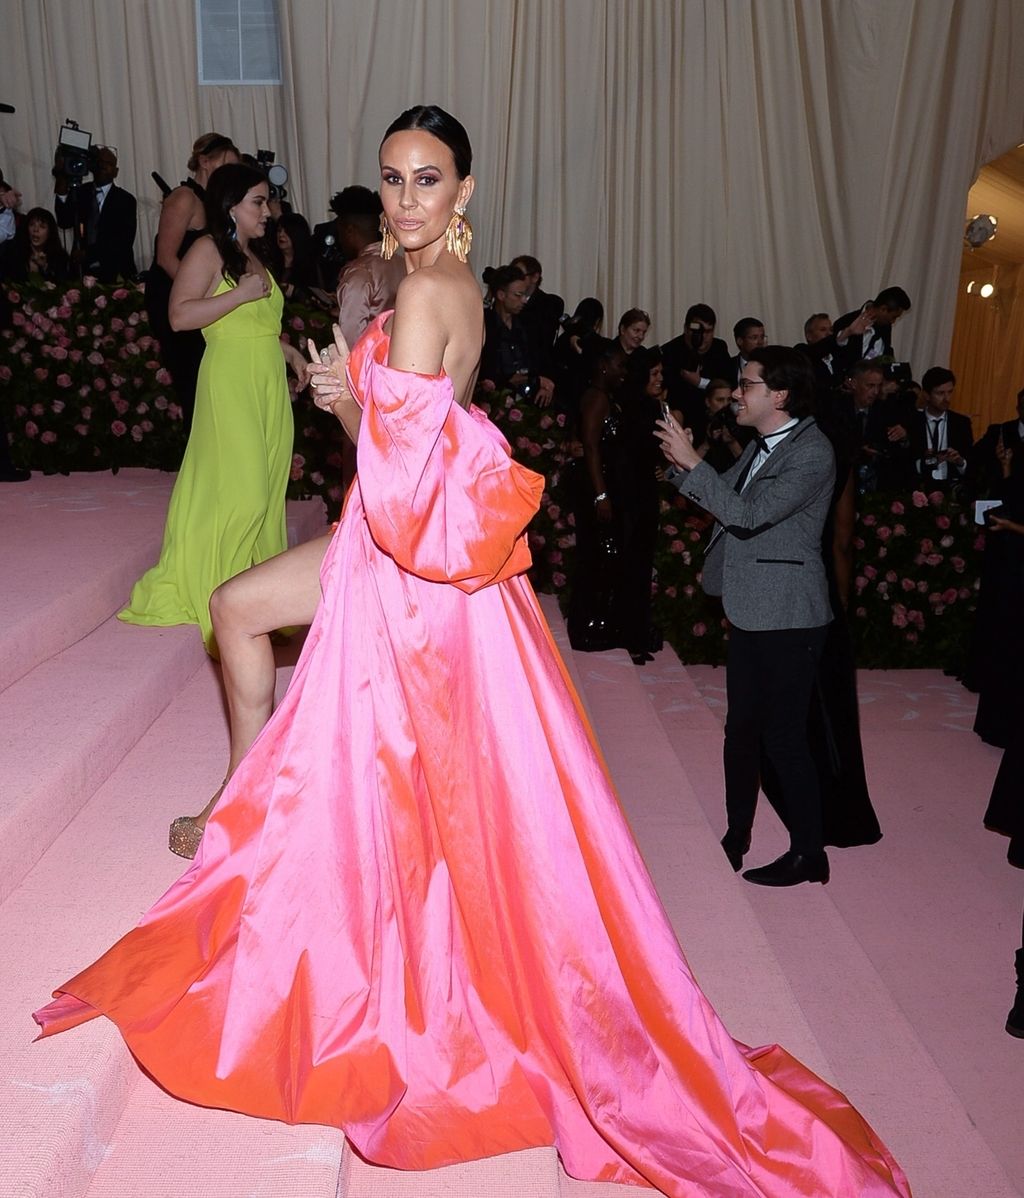 La excentricidad era esto: la alfombra roja de la Gala Met, foto a foto